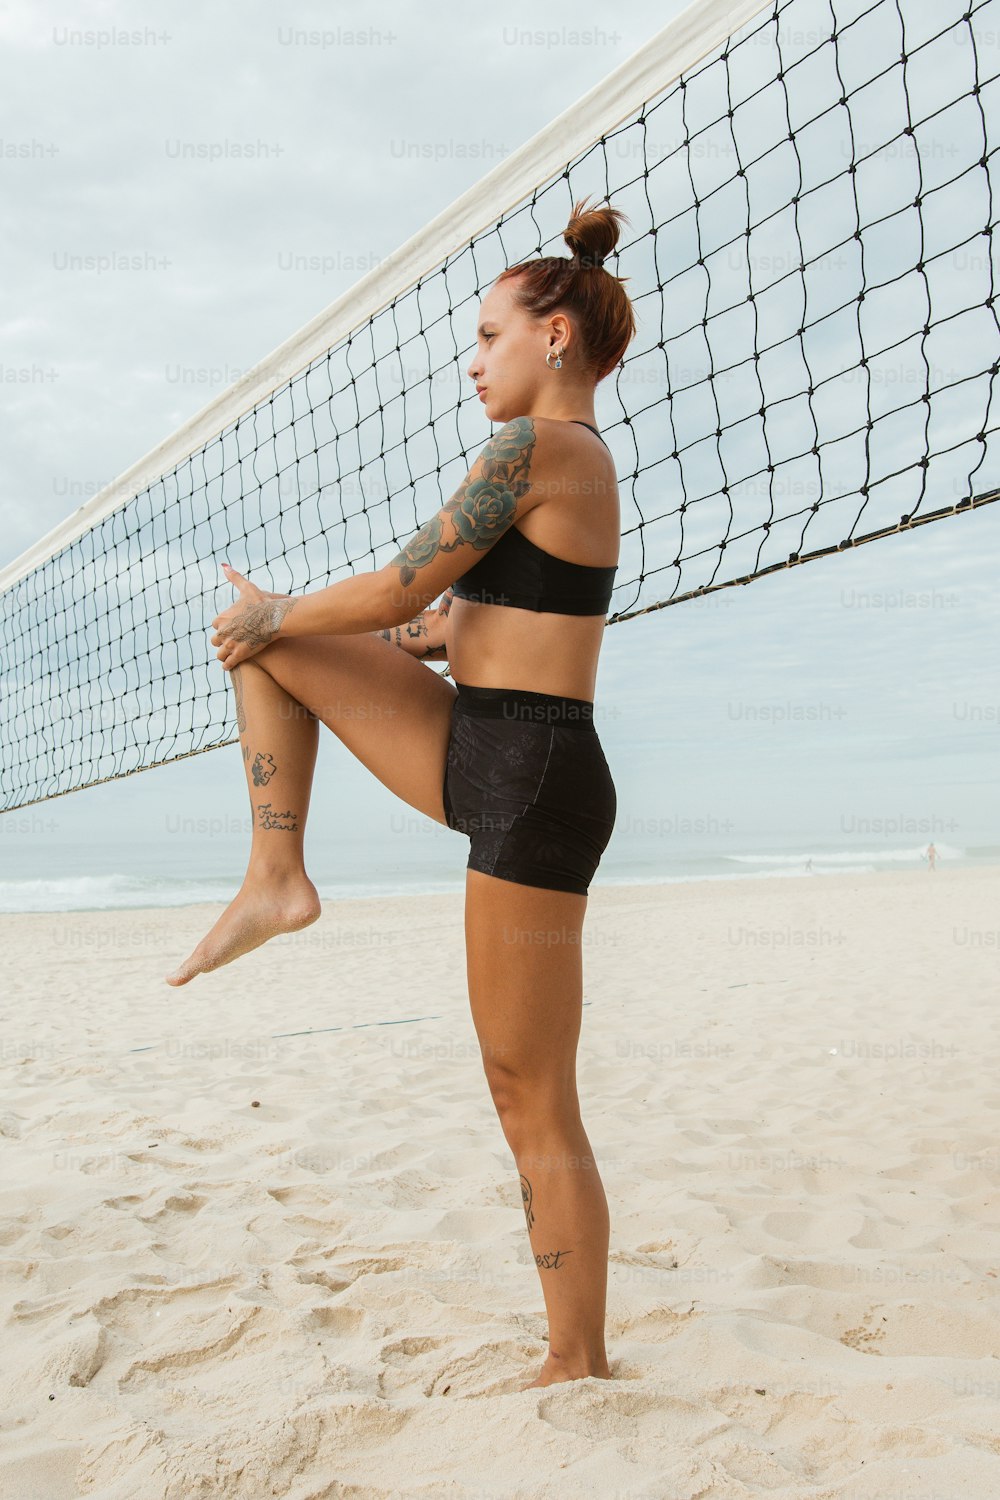 バレーボールネットの隣のビーチに立つ女性